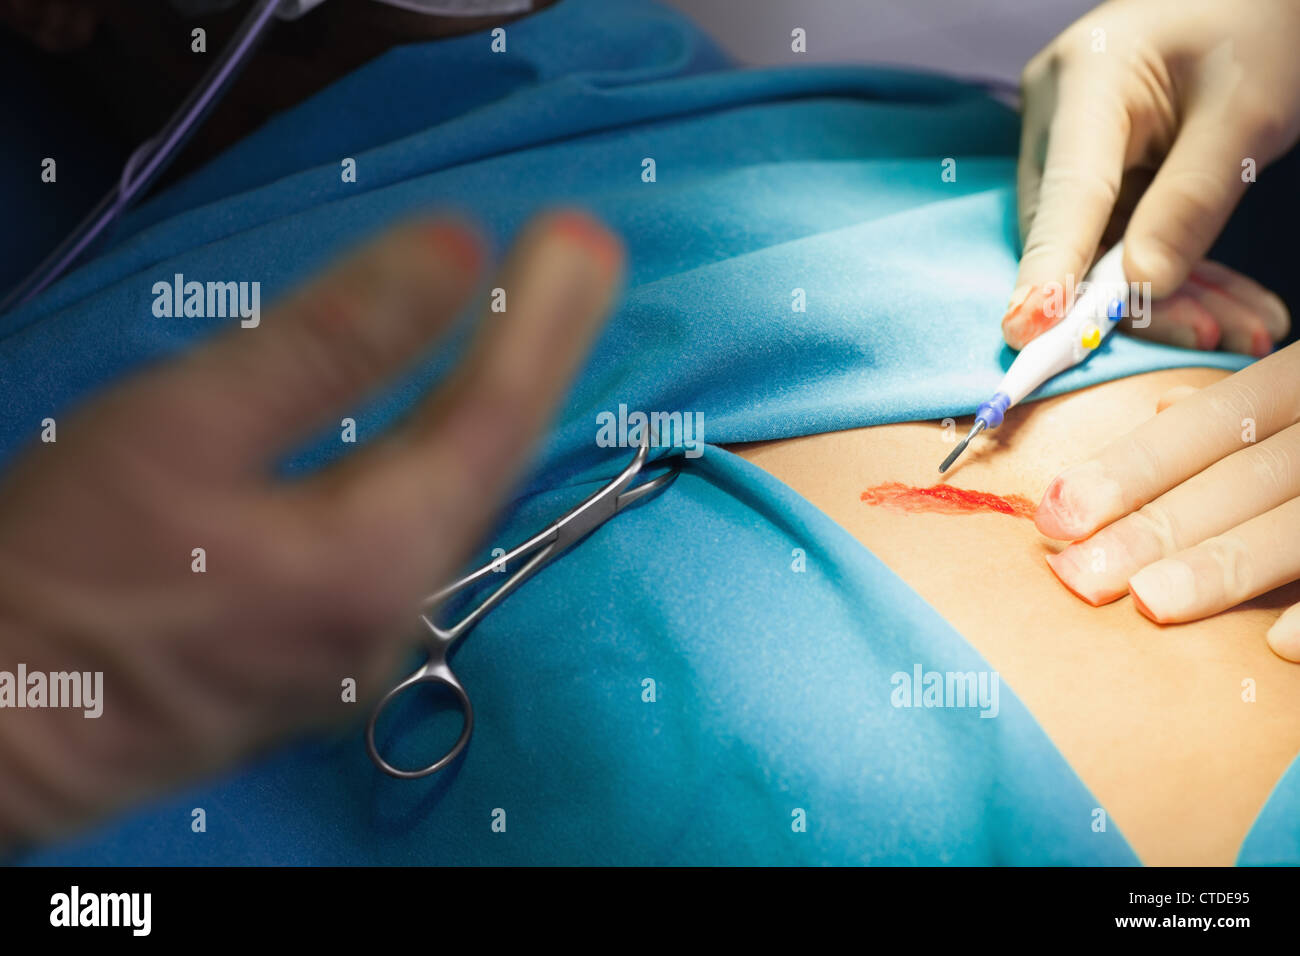 Medico usando un bisturi durante un intervento chirurgico Foto Stock